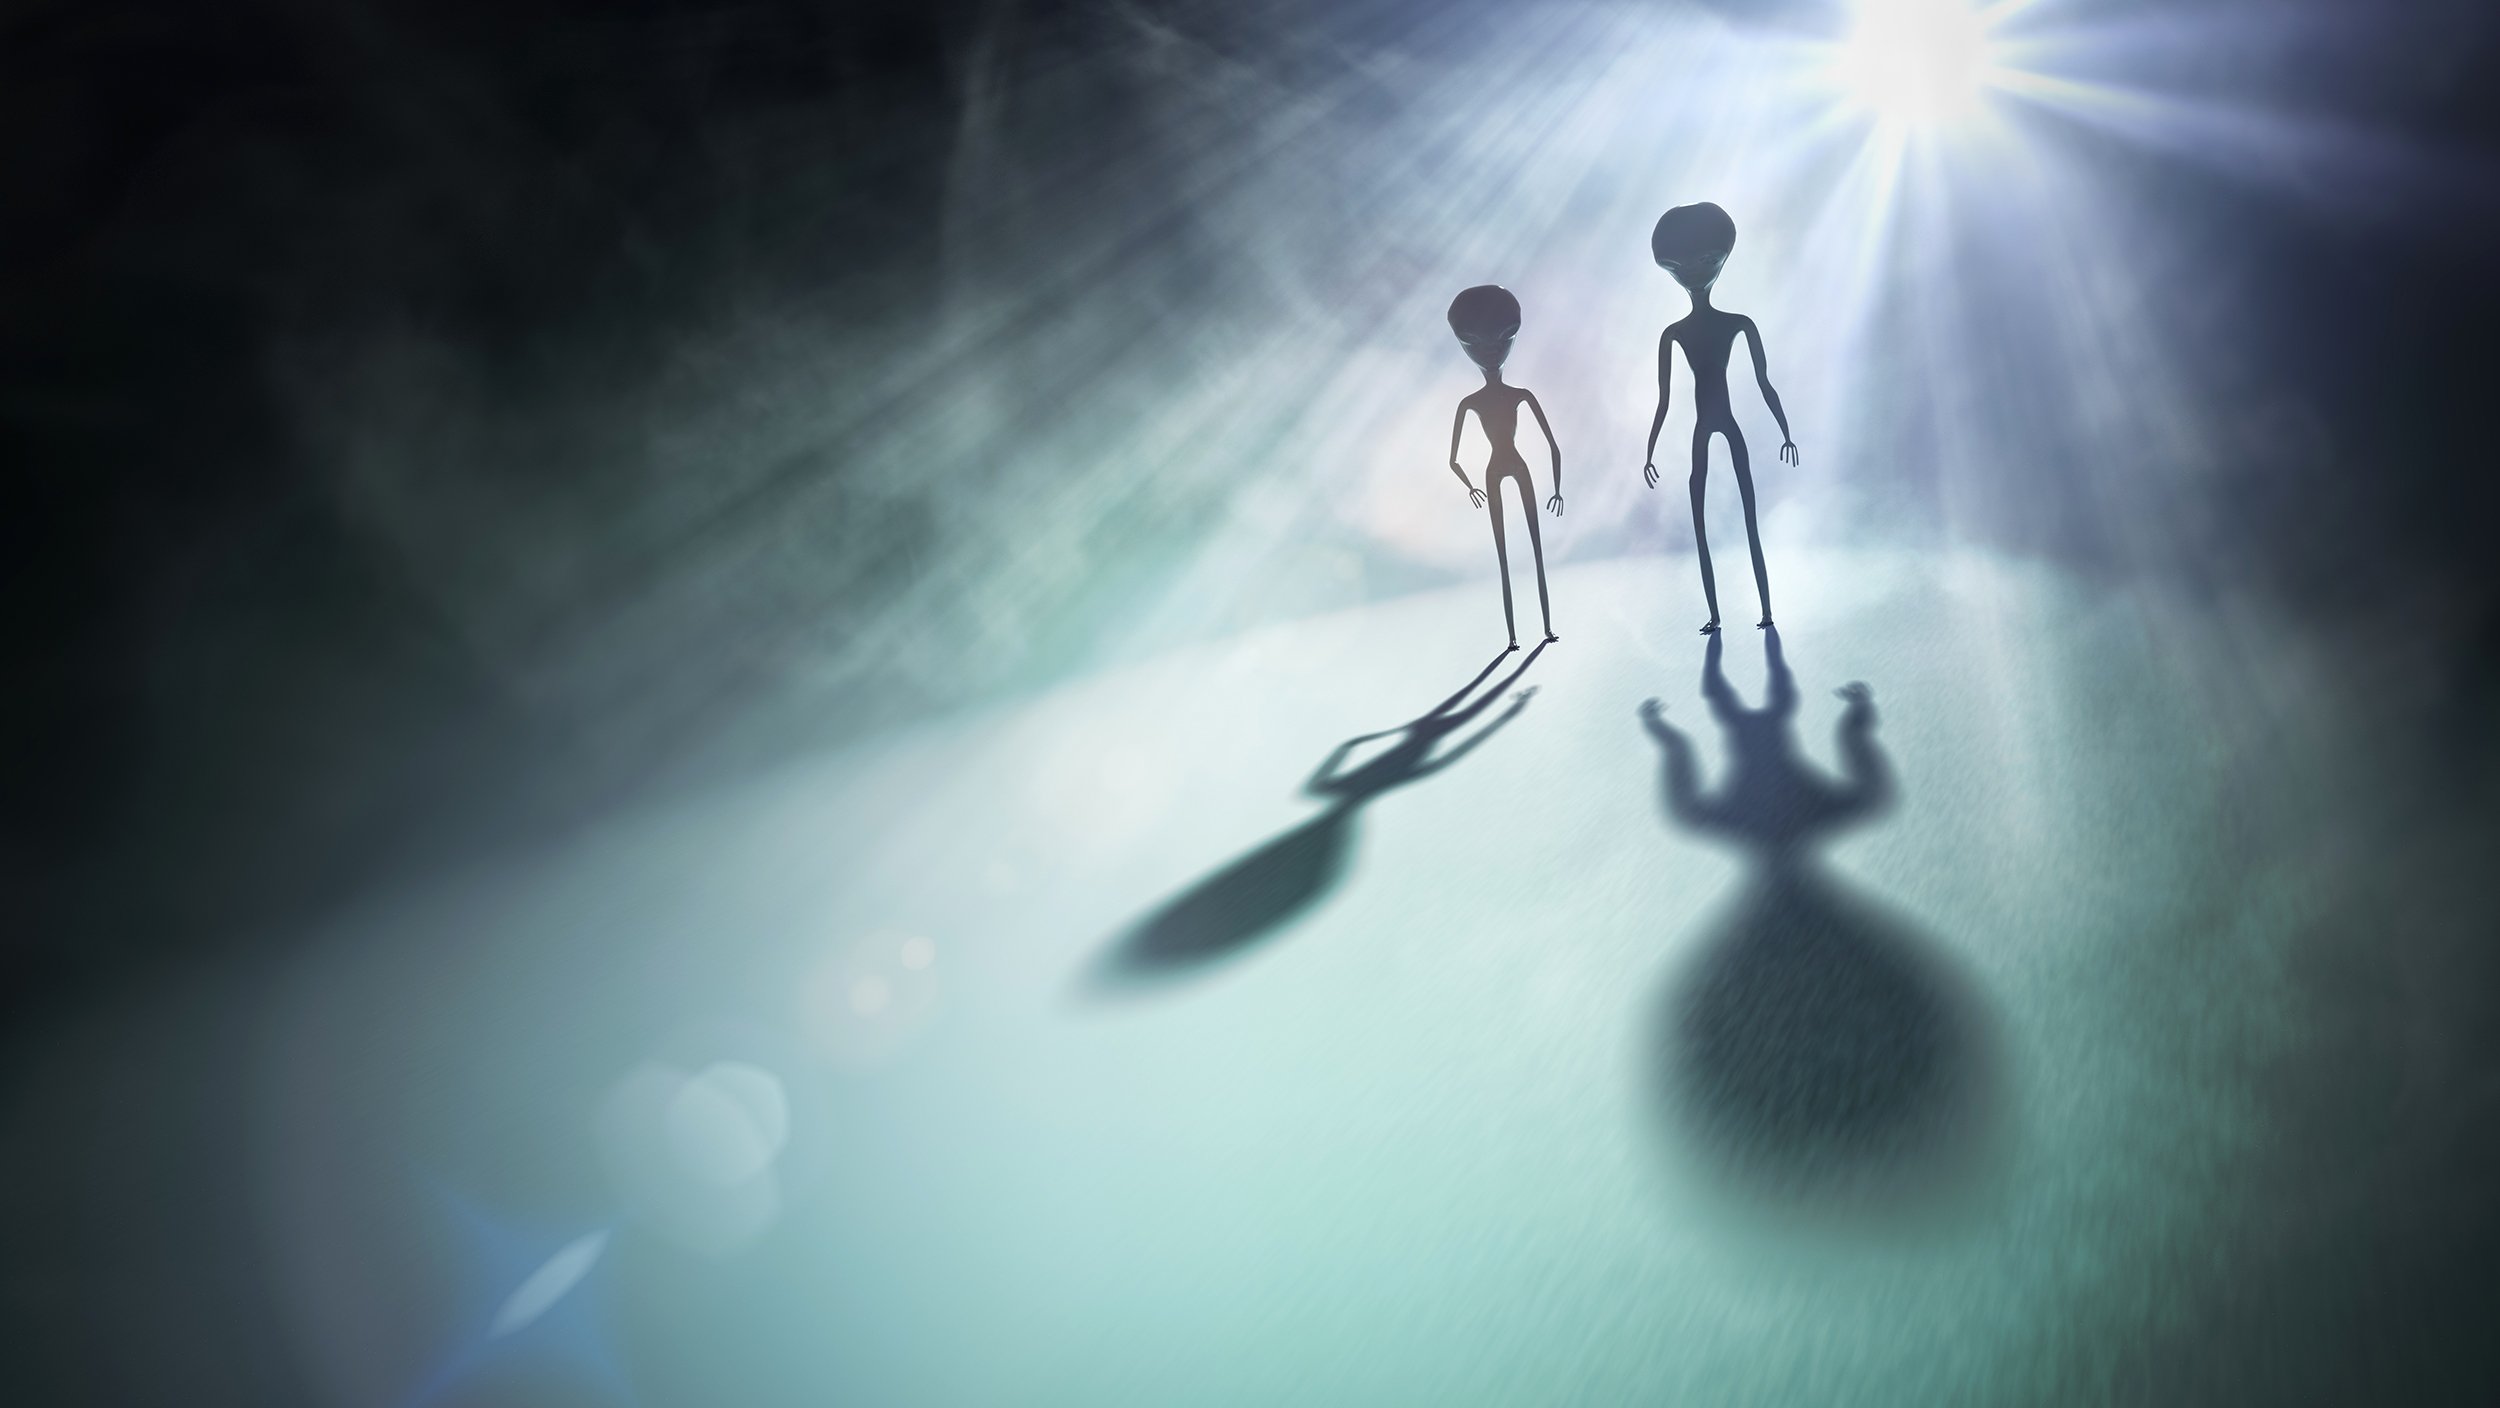  Suntem urmăriţi de extratereştri? SUA urmează să publice un raport oficial